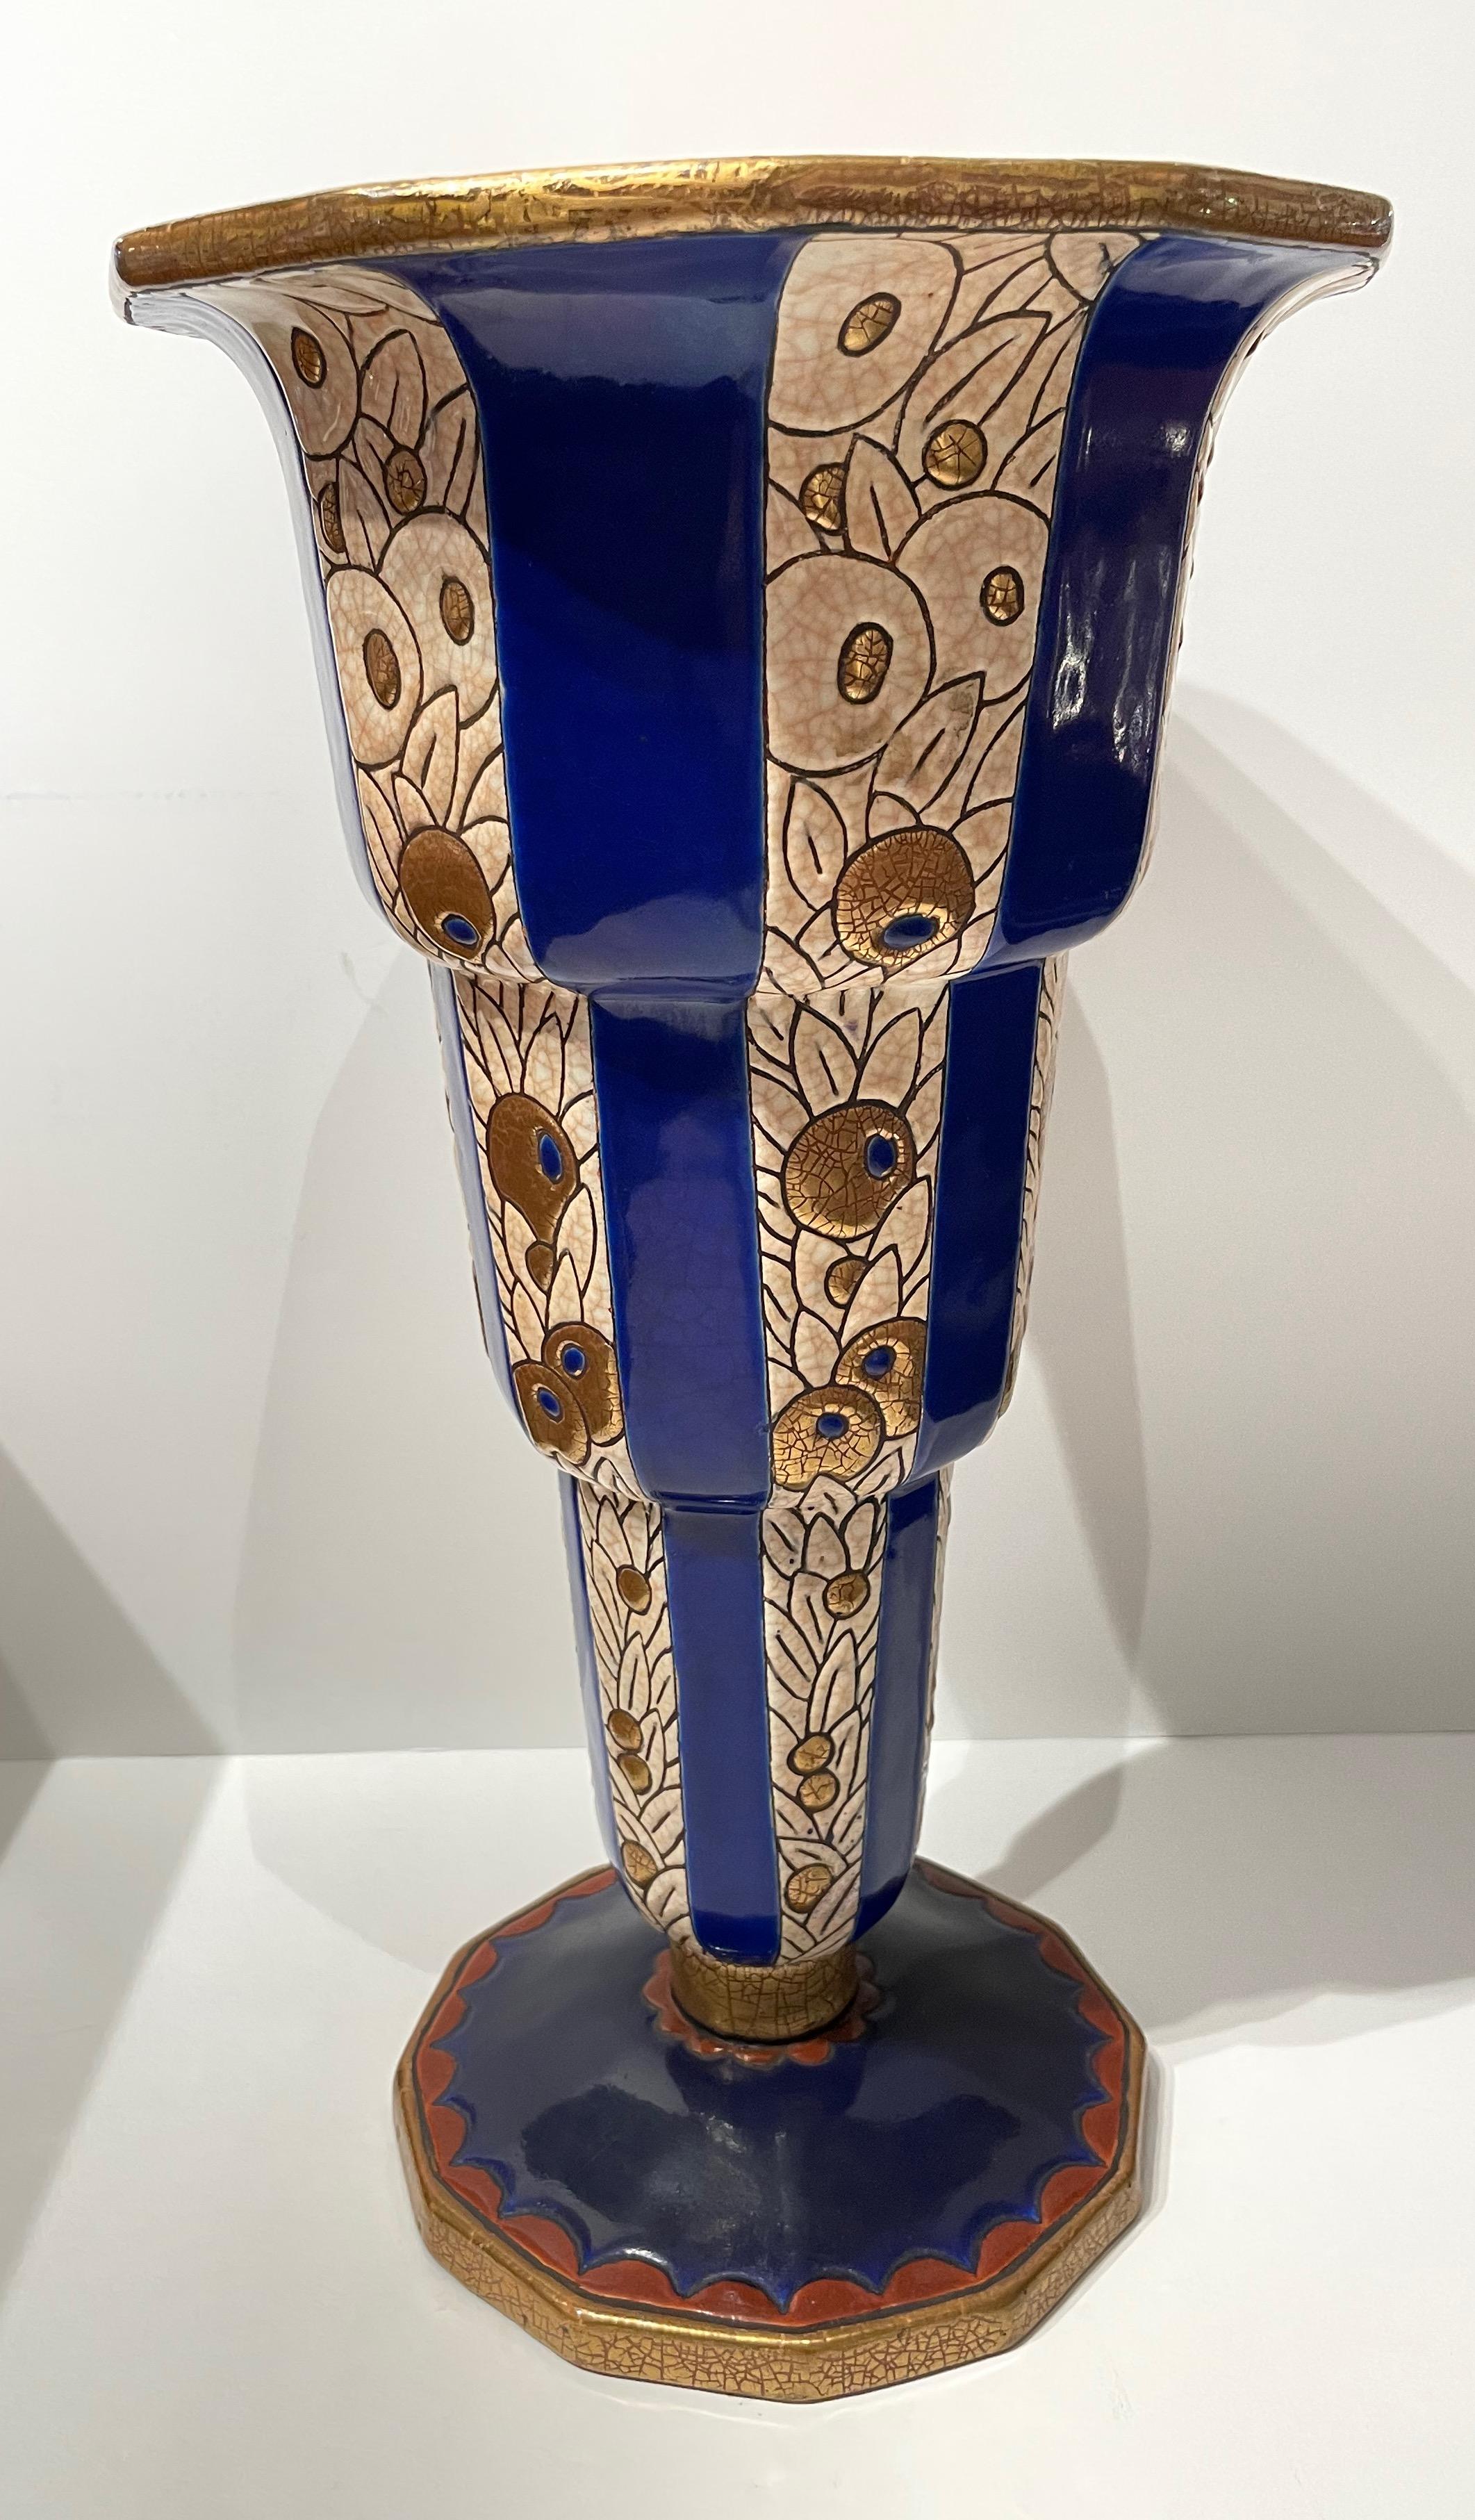 Vase en céramique cloisonnée Art déco français Longwy. Superbe taille extra large, couleur brillante avec base facettée. Traitement des motifs en escalier de bleu et d'or avec des motifs de fleurs répétés entrecoupés de lignes triangulaires bleues.